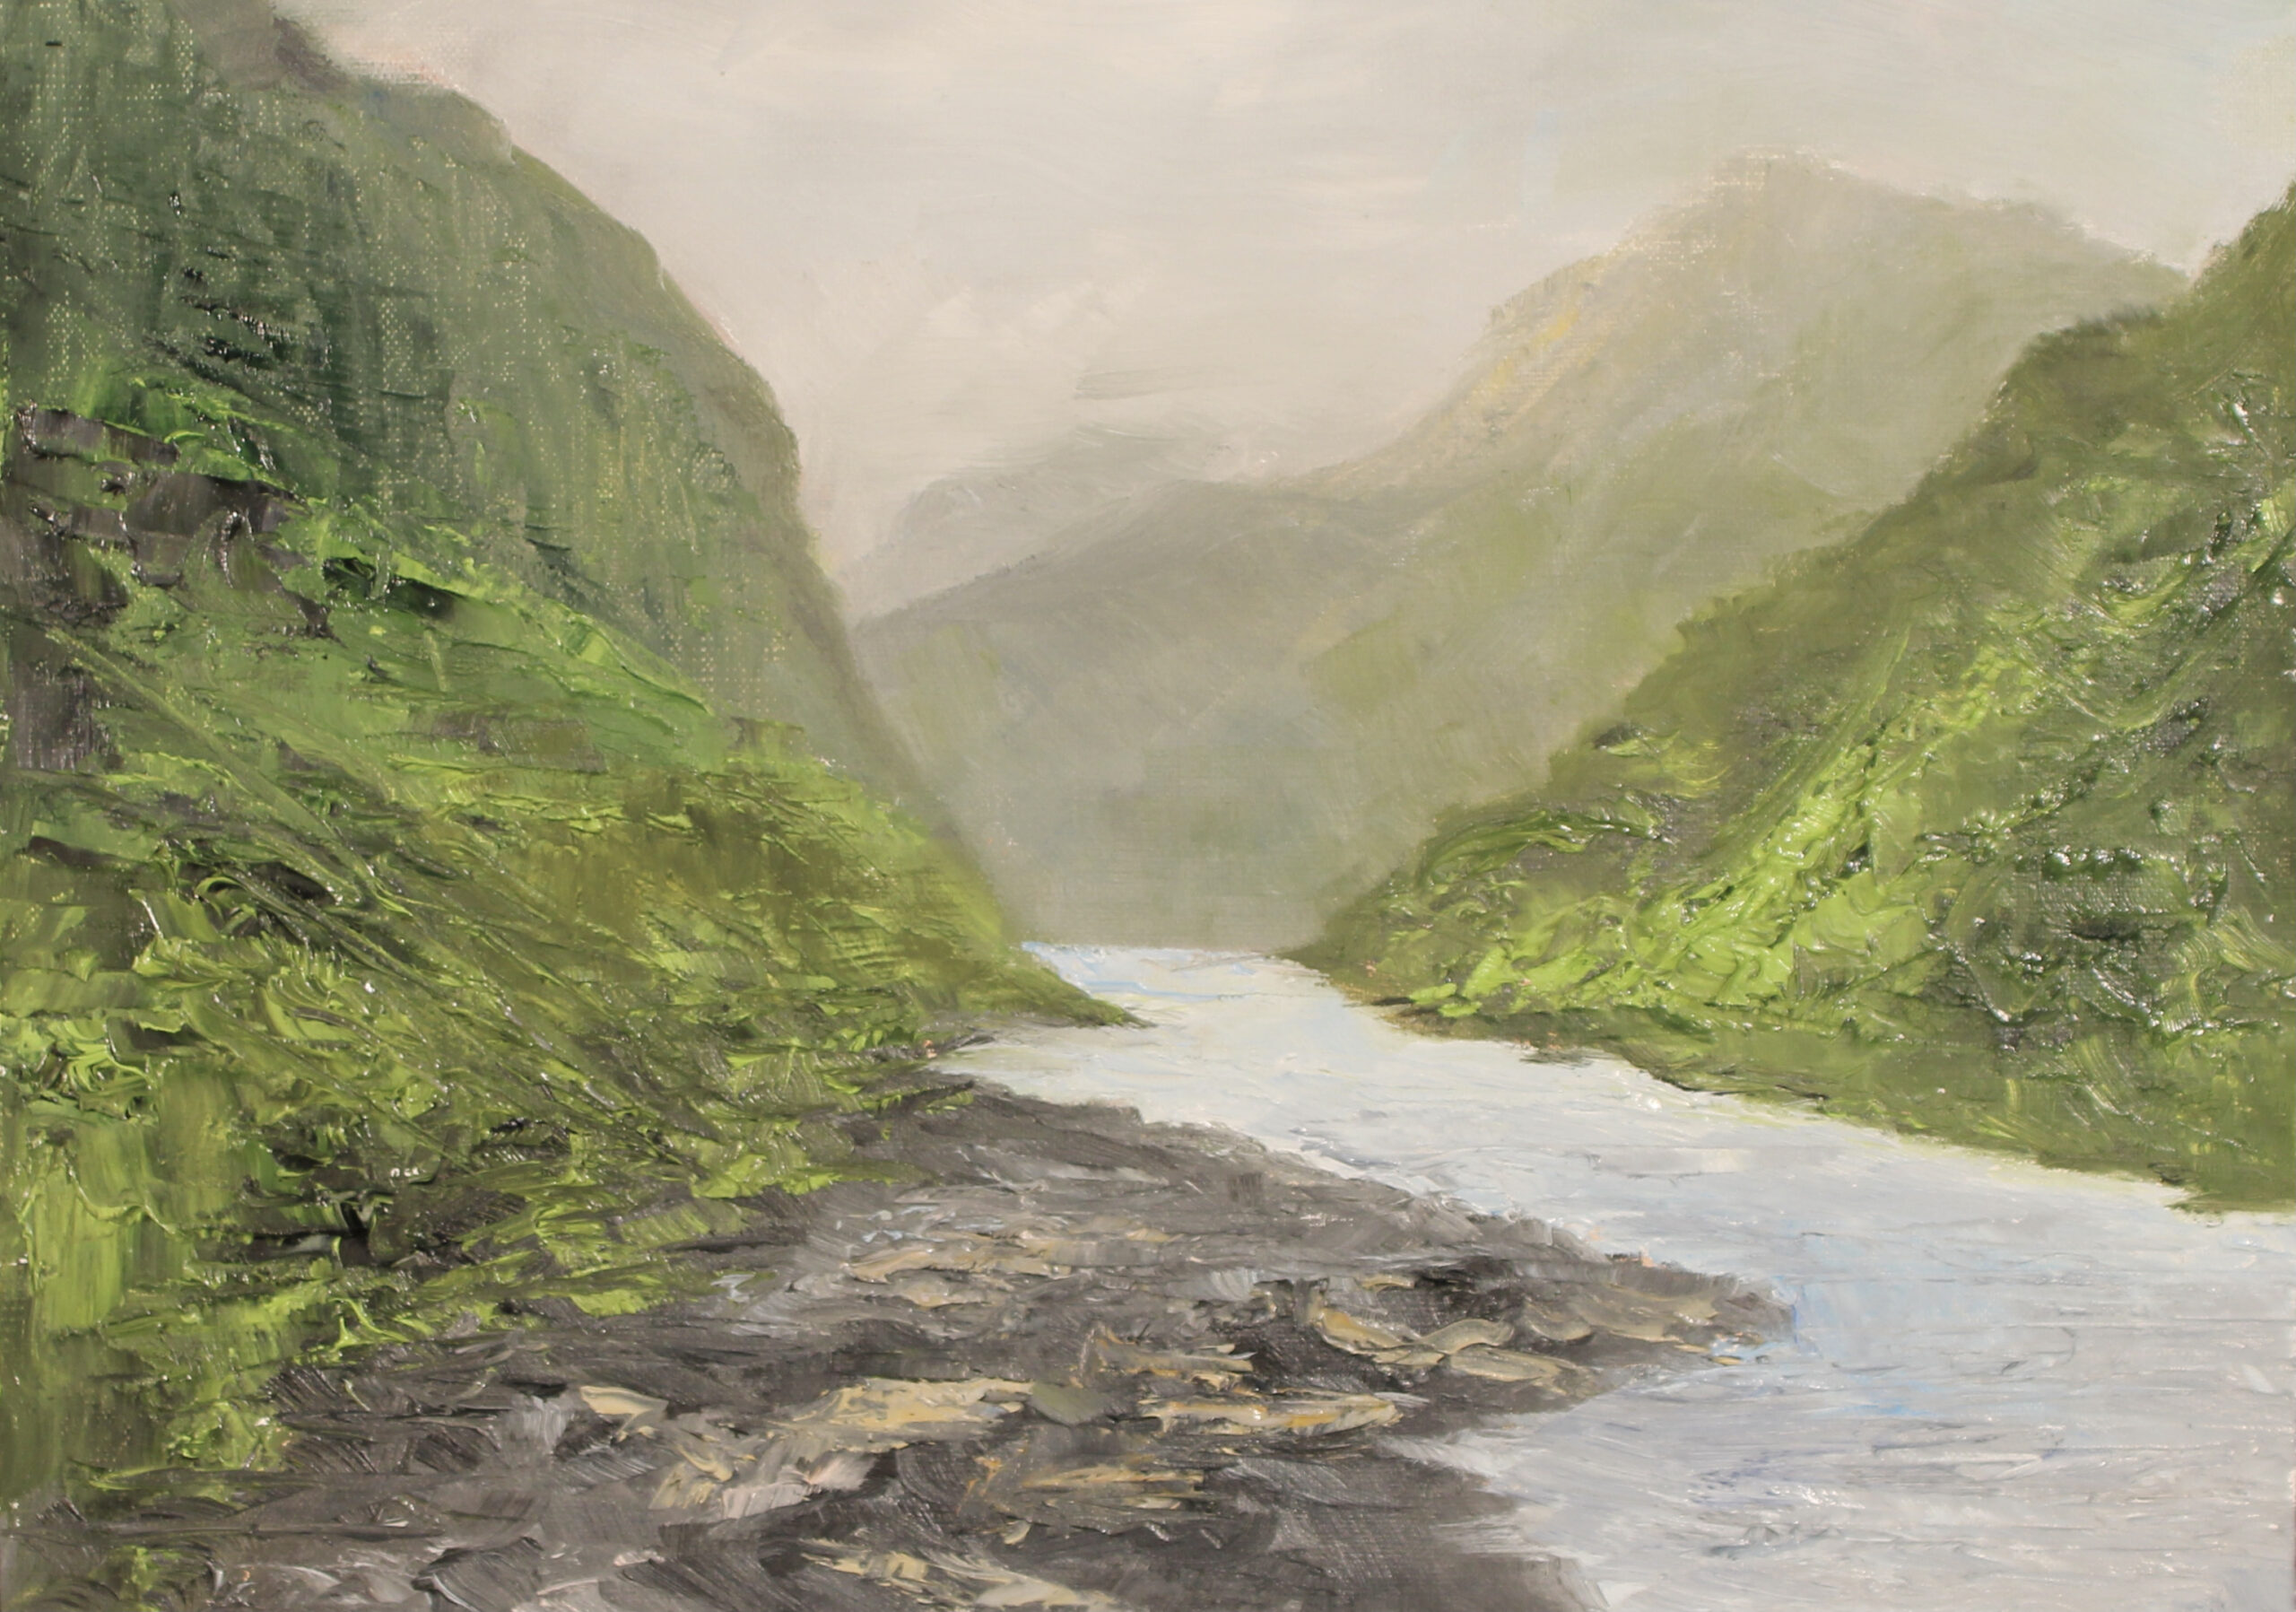 280 - Faroe Island Scene - 9x12 - Landscape - $375